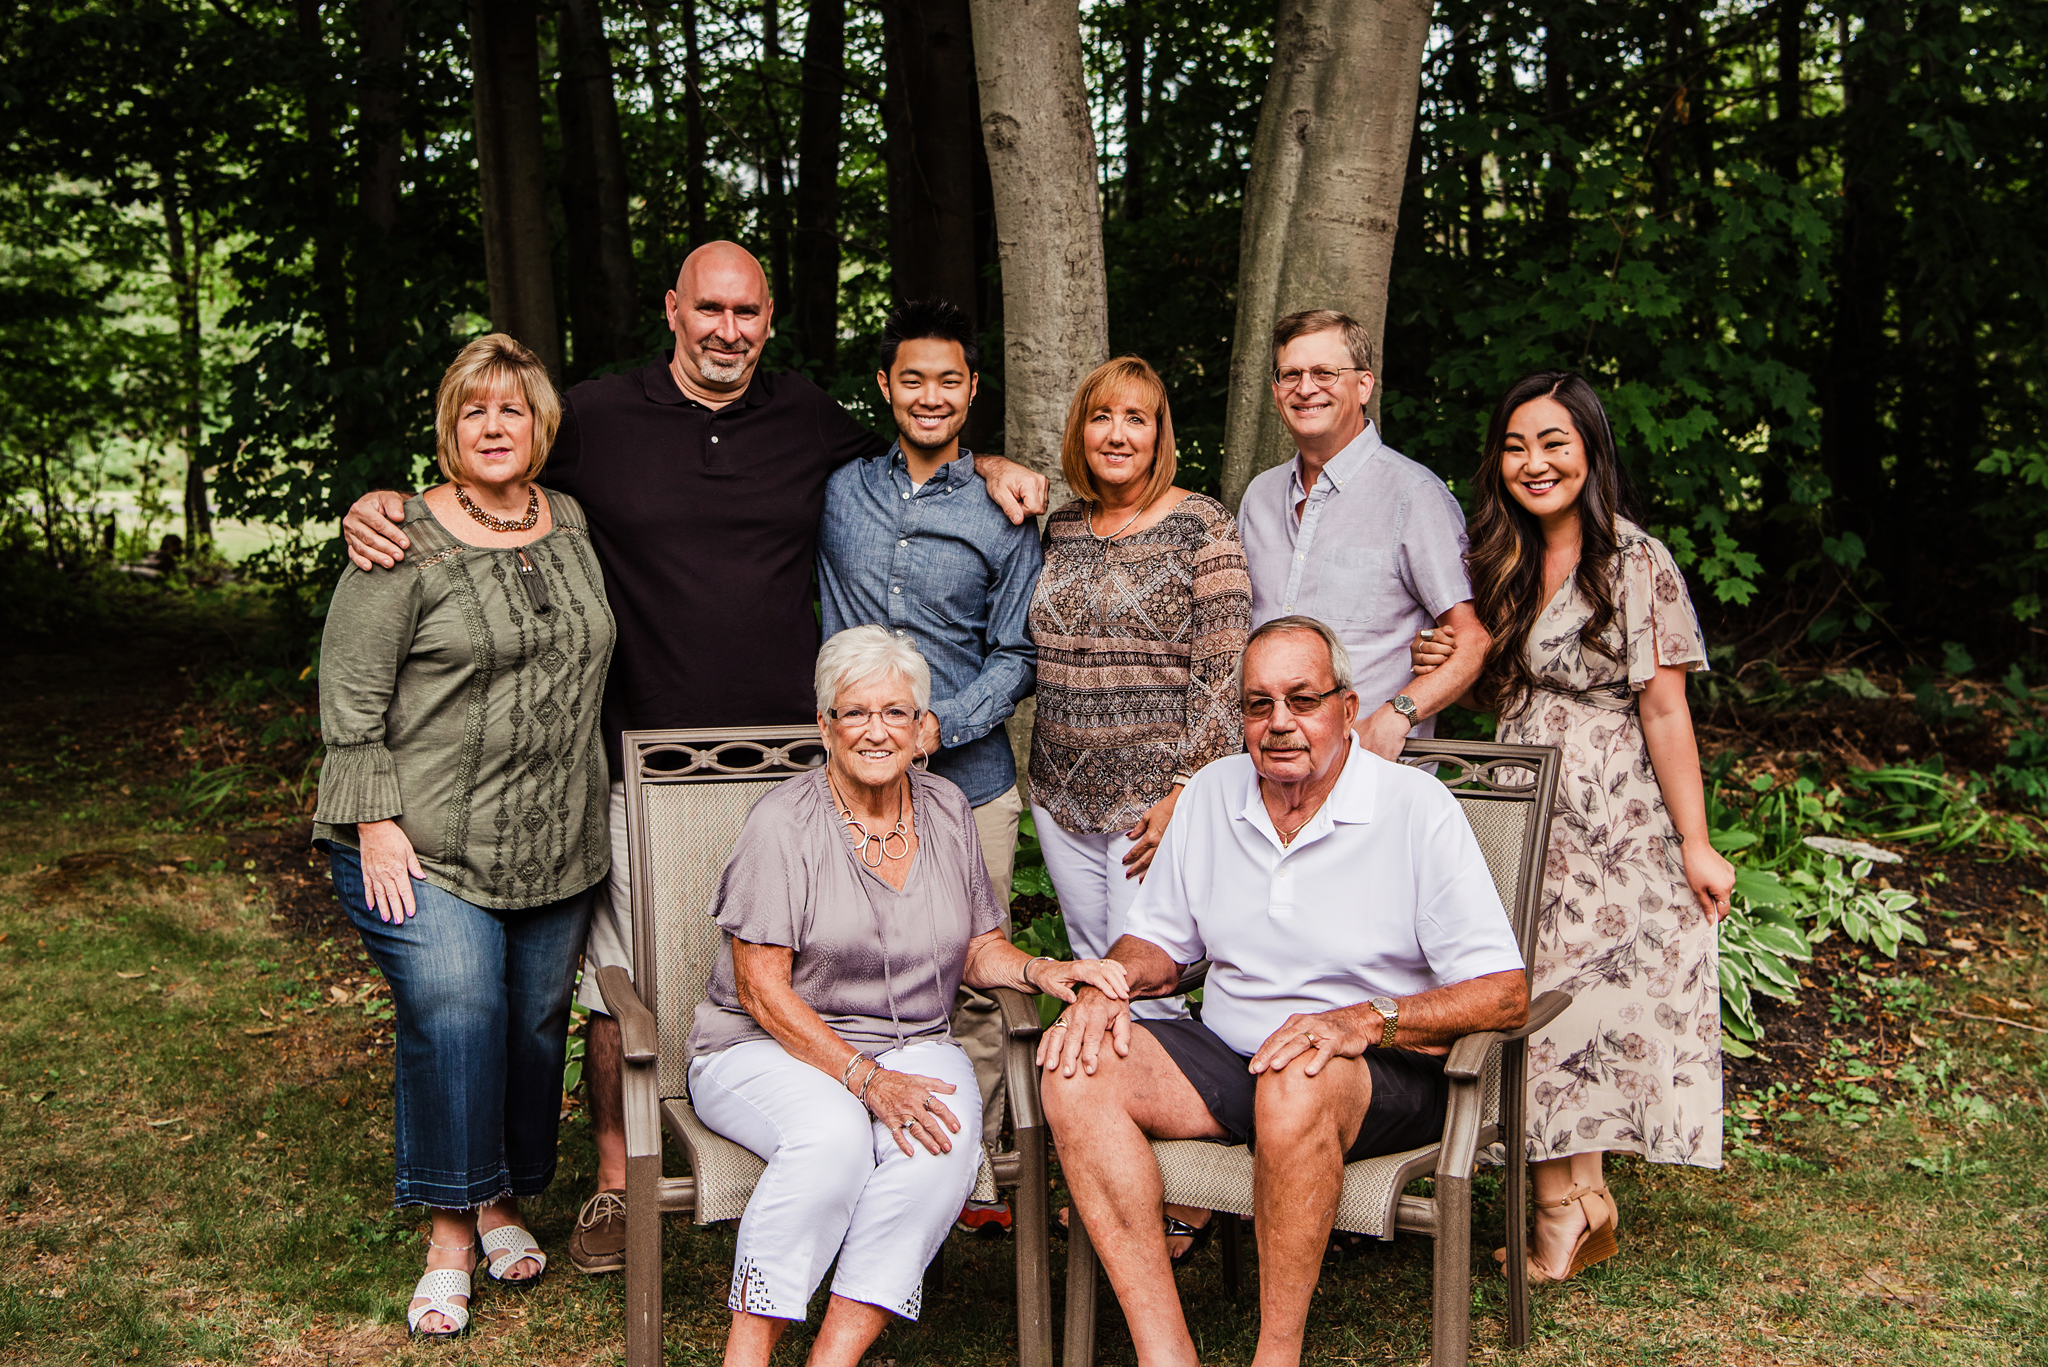 Our_Family_2019_Rochester_Family_Session_JILL_STUDIO_Rochester_NY_Photographer_DSC_5154.jpg